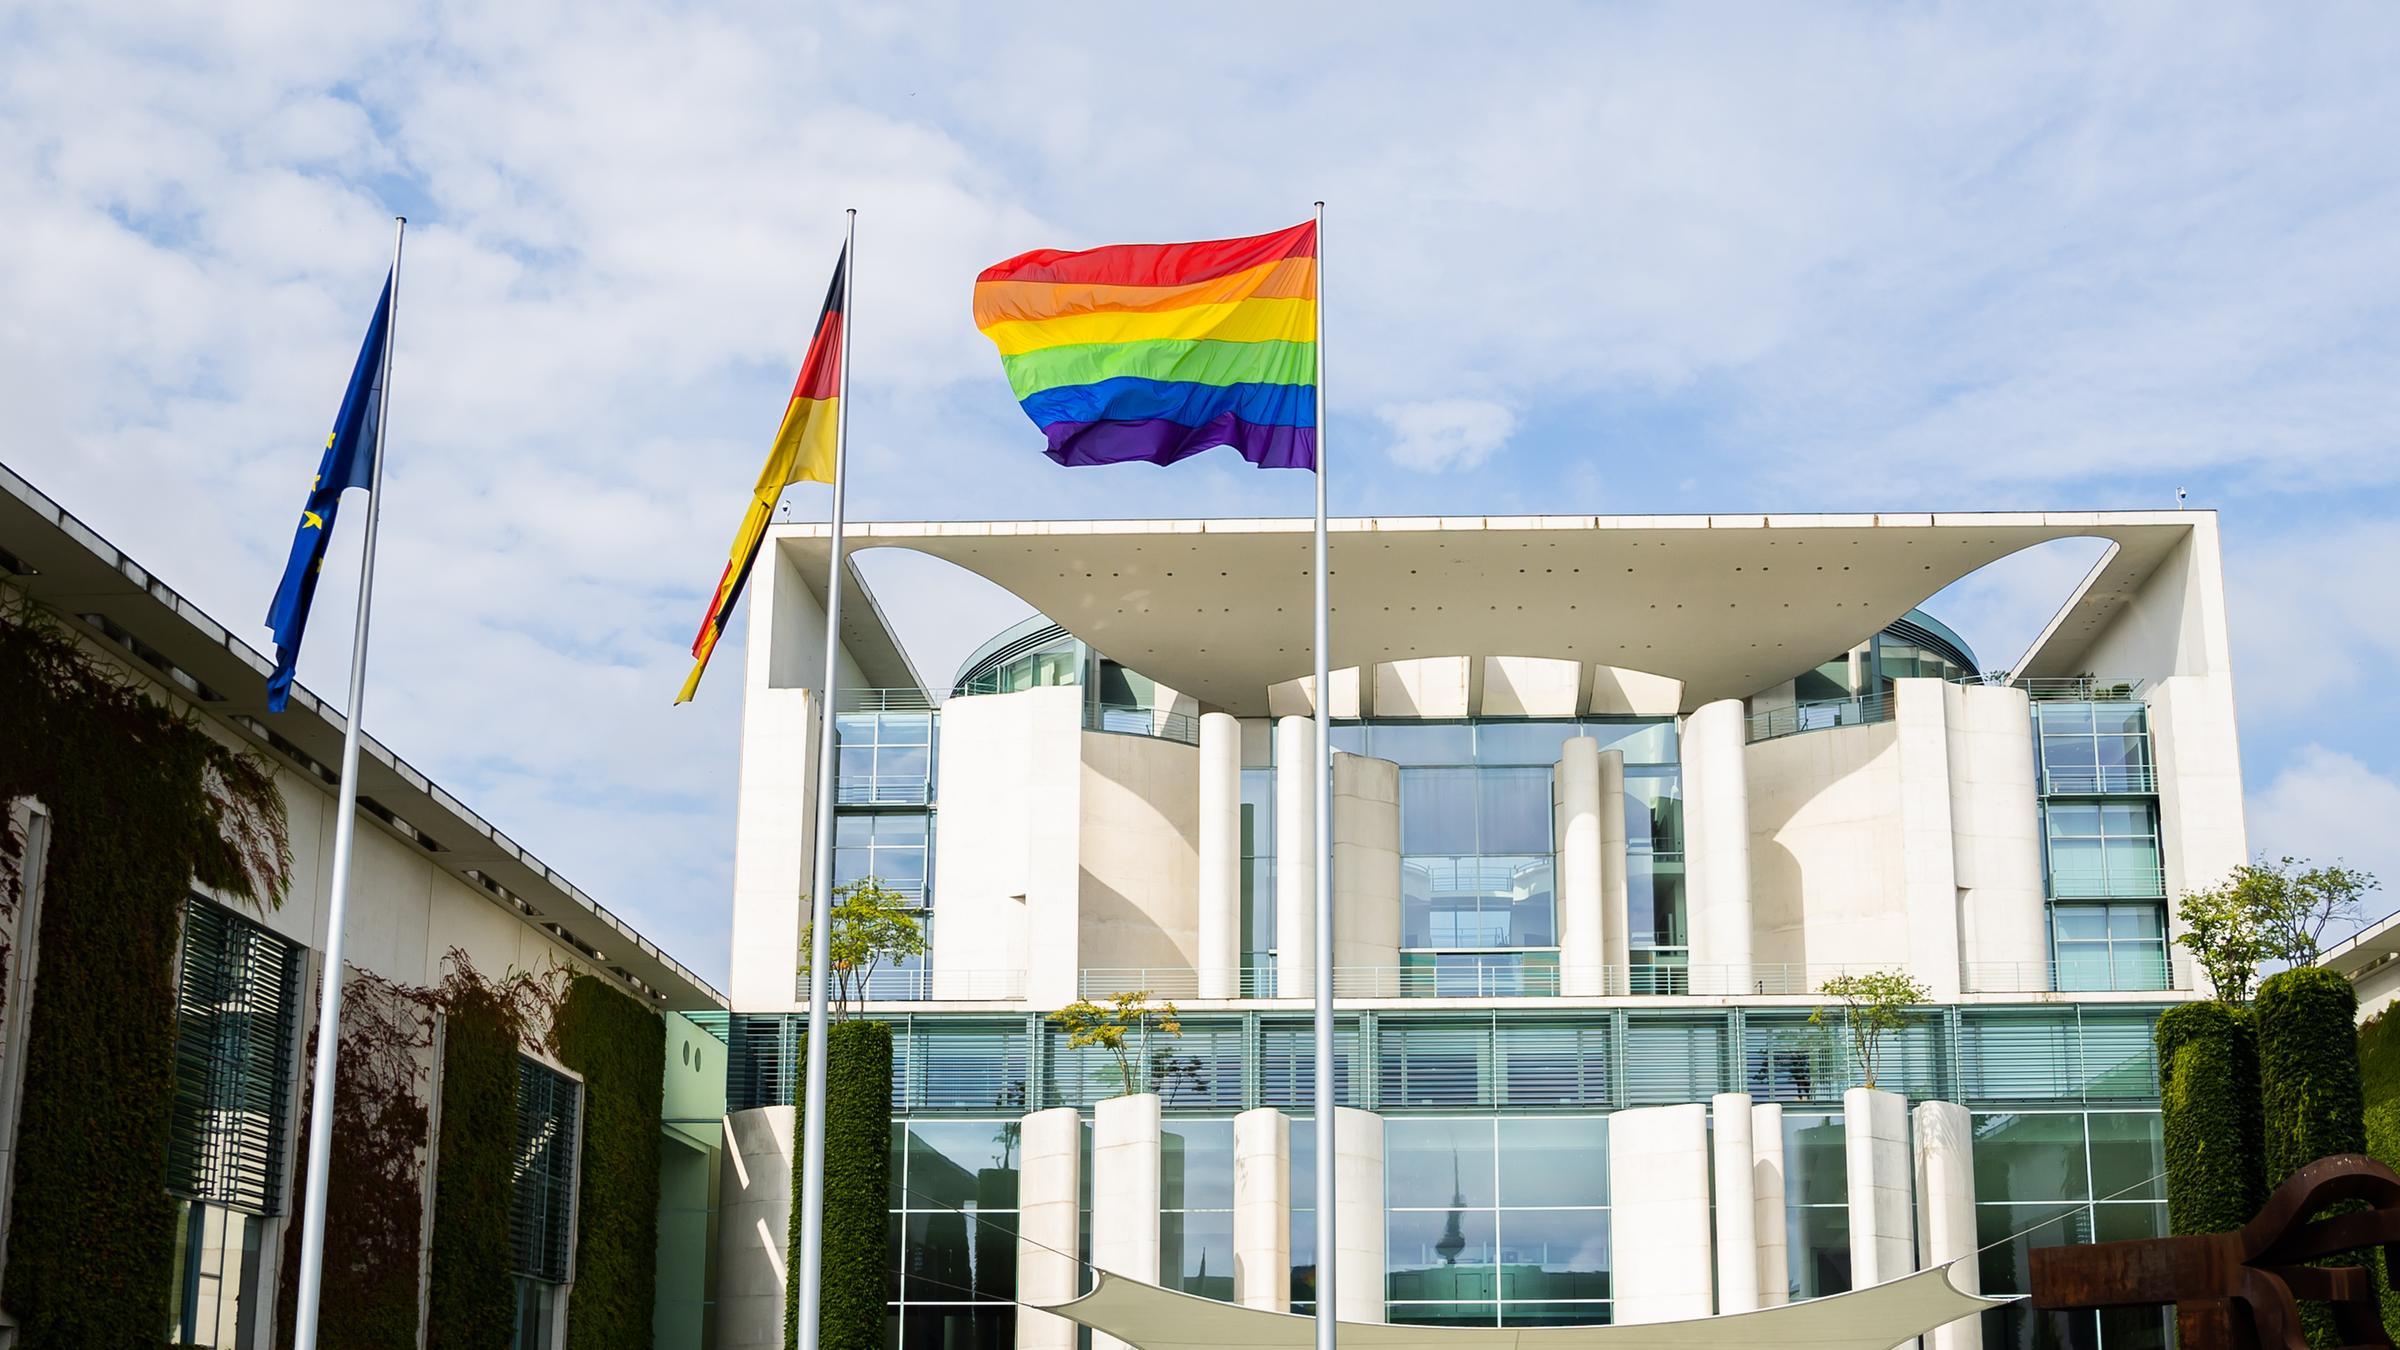 Berlin: Die Regenbogenfahne weht anlässlich des Berliner Christopher Street Day (CSD) am Bundeskanzleramt.